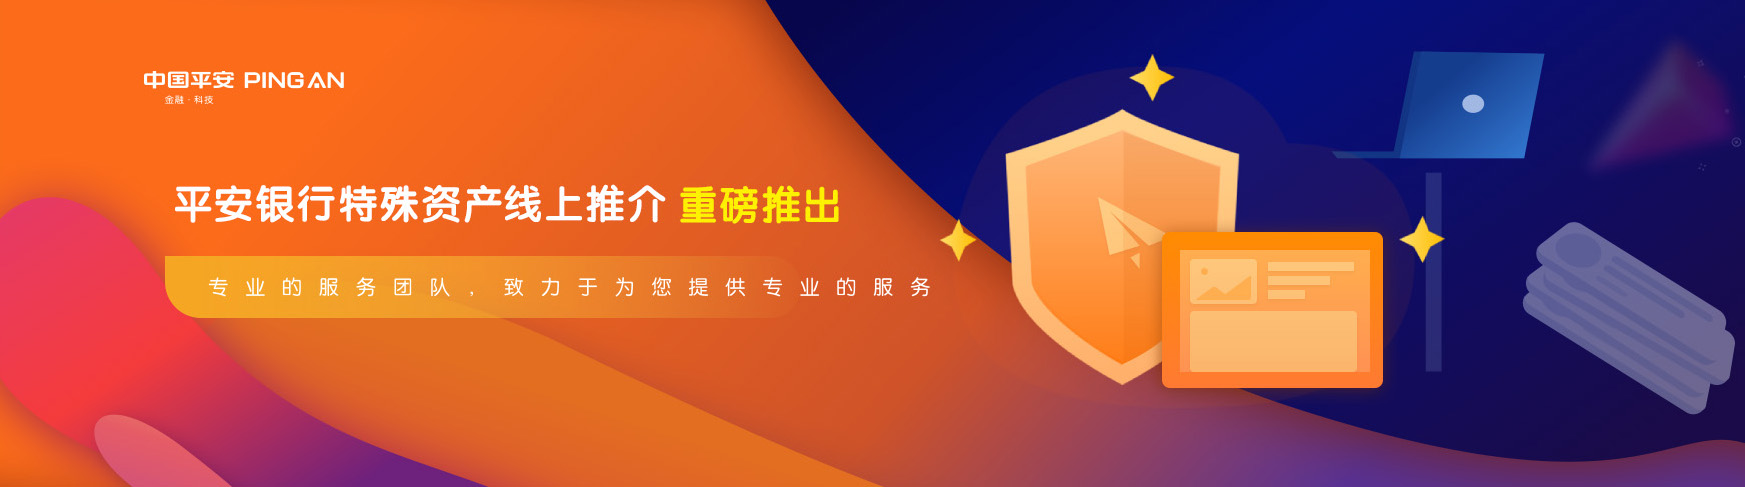 平安银行特管部开启线上资产推介新模式-中国网地产